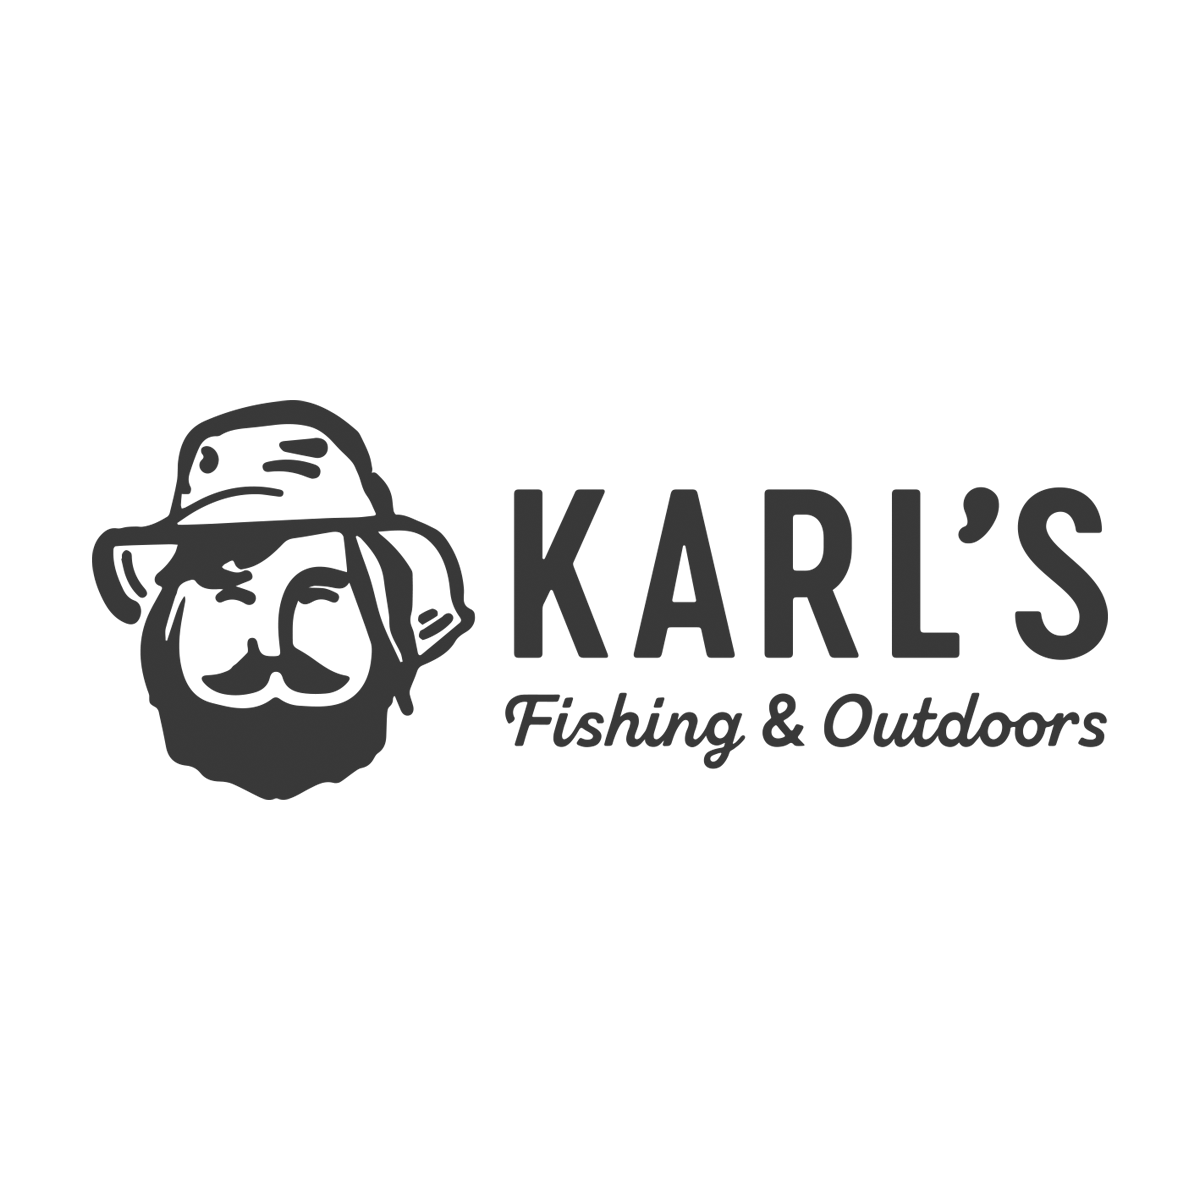 Karls-WestBend-Fort-Worth-Fishing-Fly-Shop-logov2.png